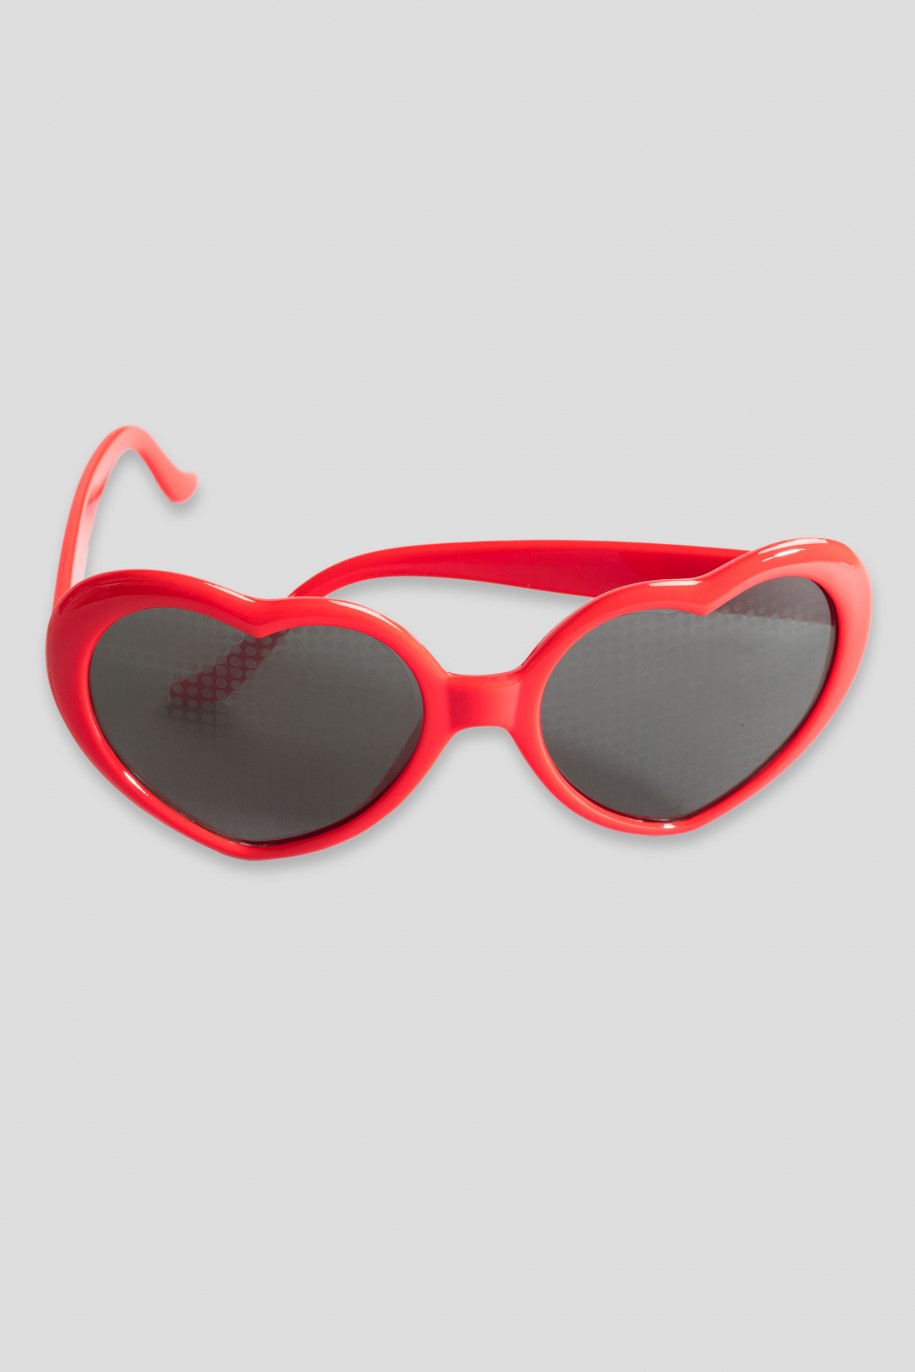 Czerwone okulary przeciwsłoneczne SERCA - 34849